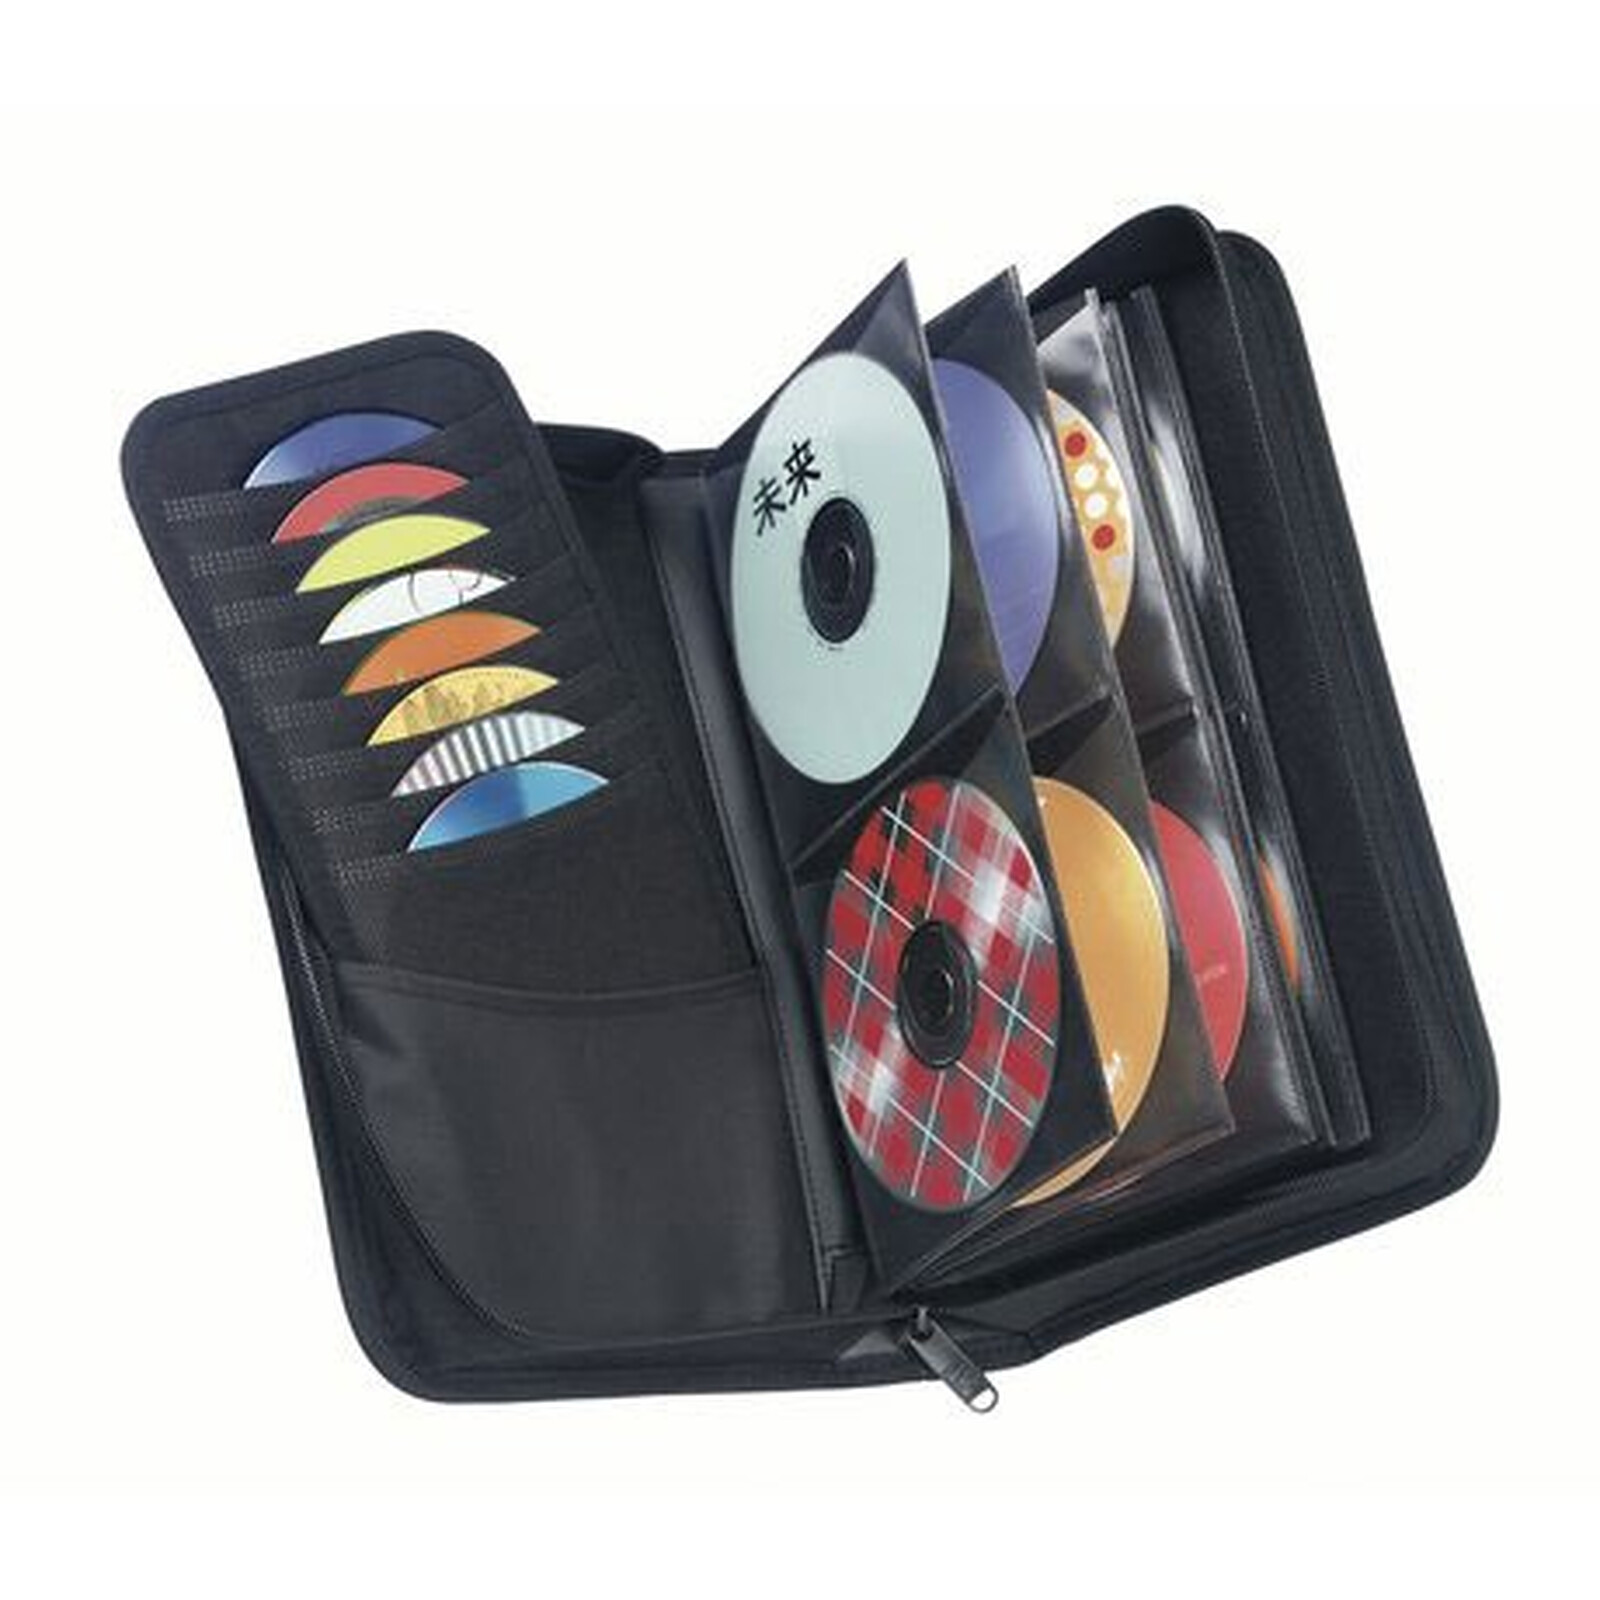 Rangement CD et DVD : une solution design et pratique